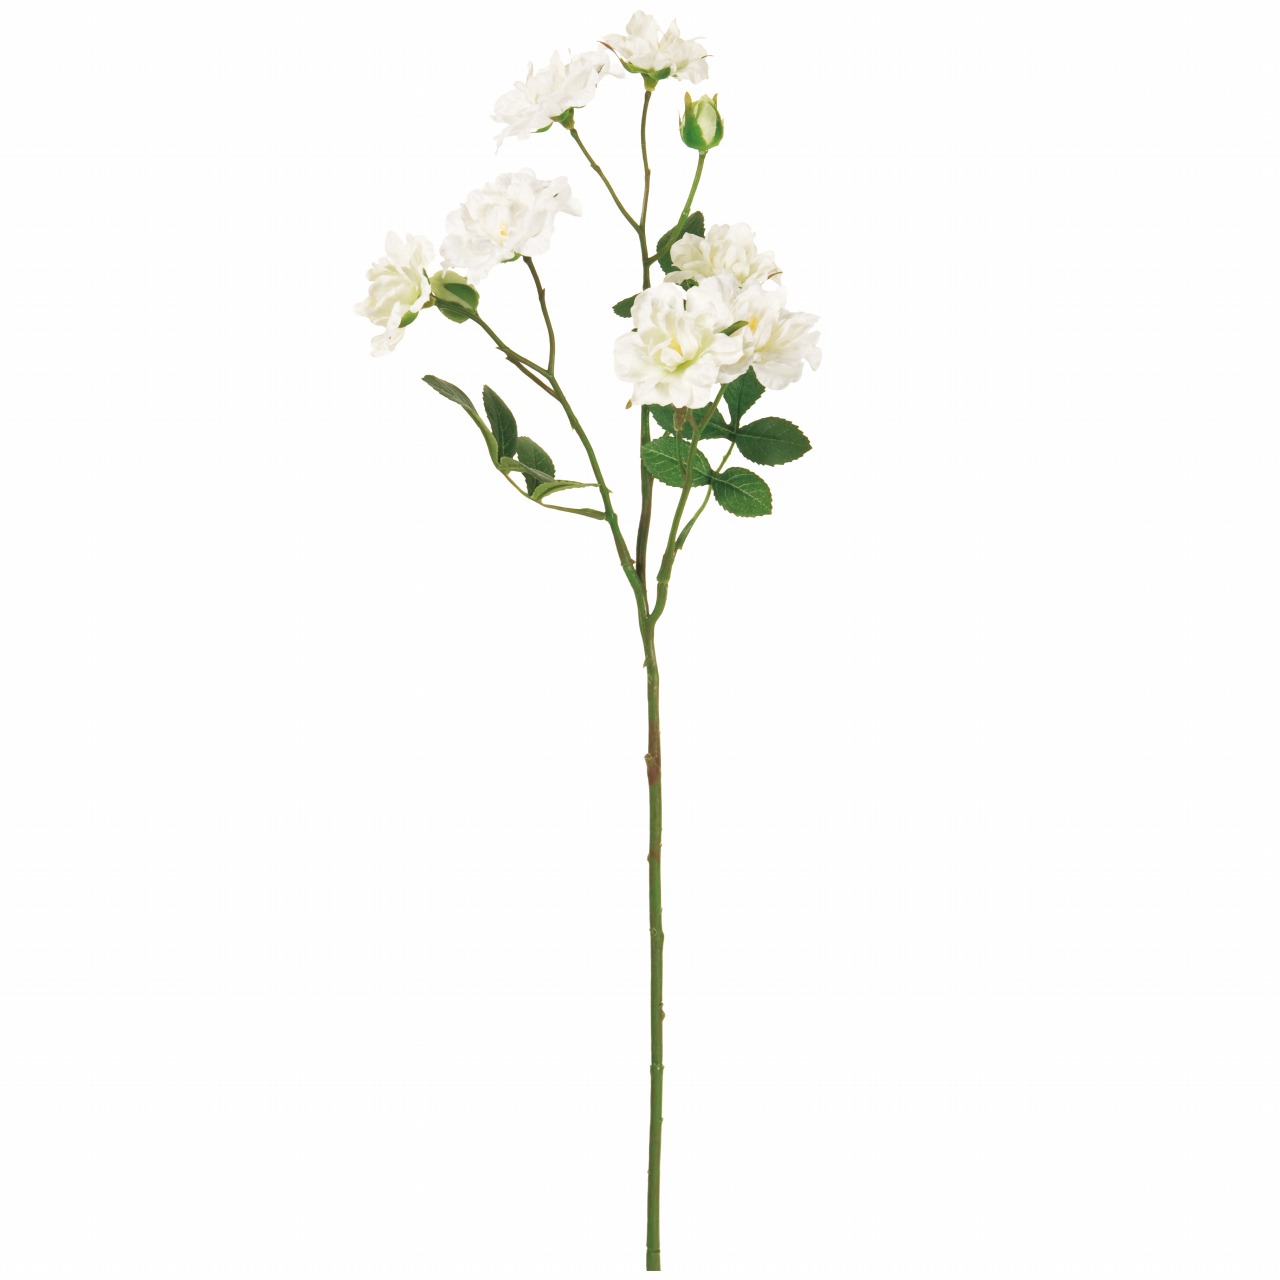 MAGIQ　バンクシアローズ　ホワイト　アーティフィシャルフラワー　造花　FM003841-001　バラ